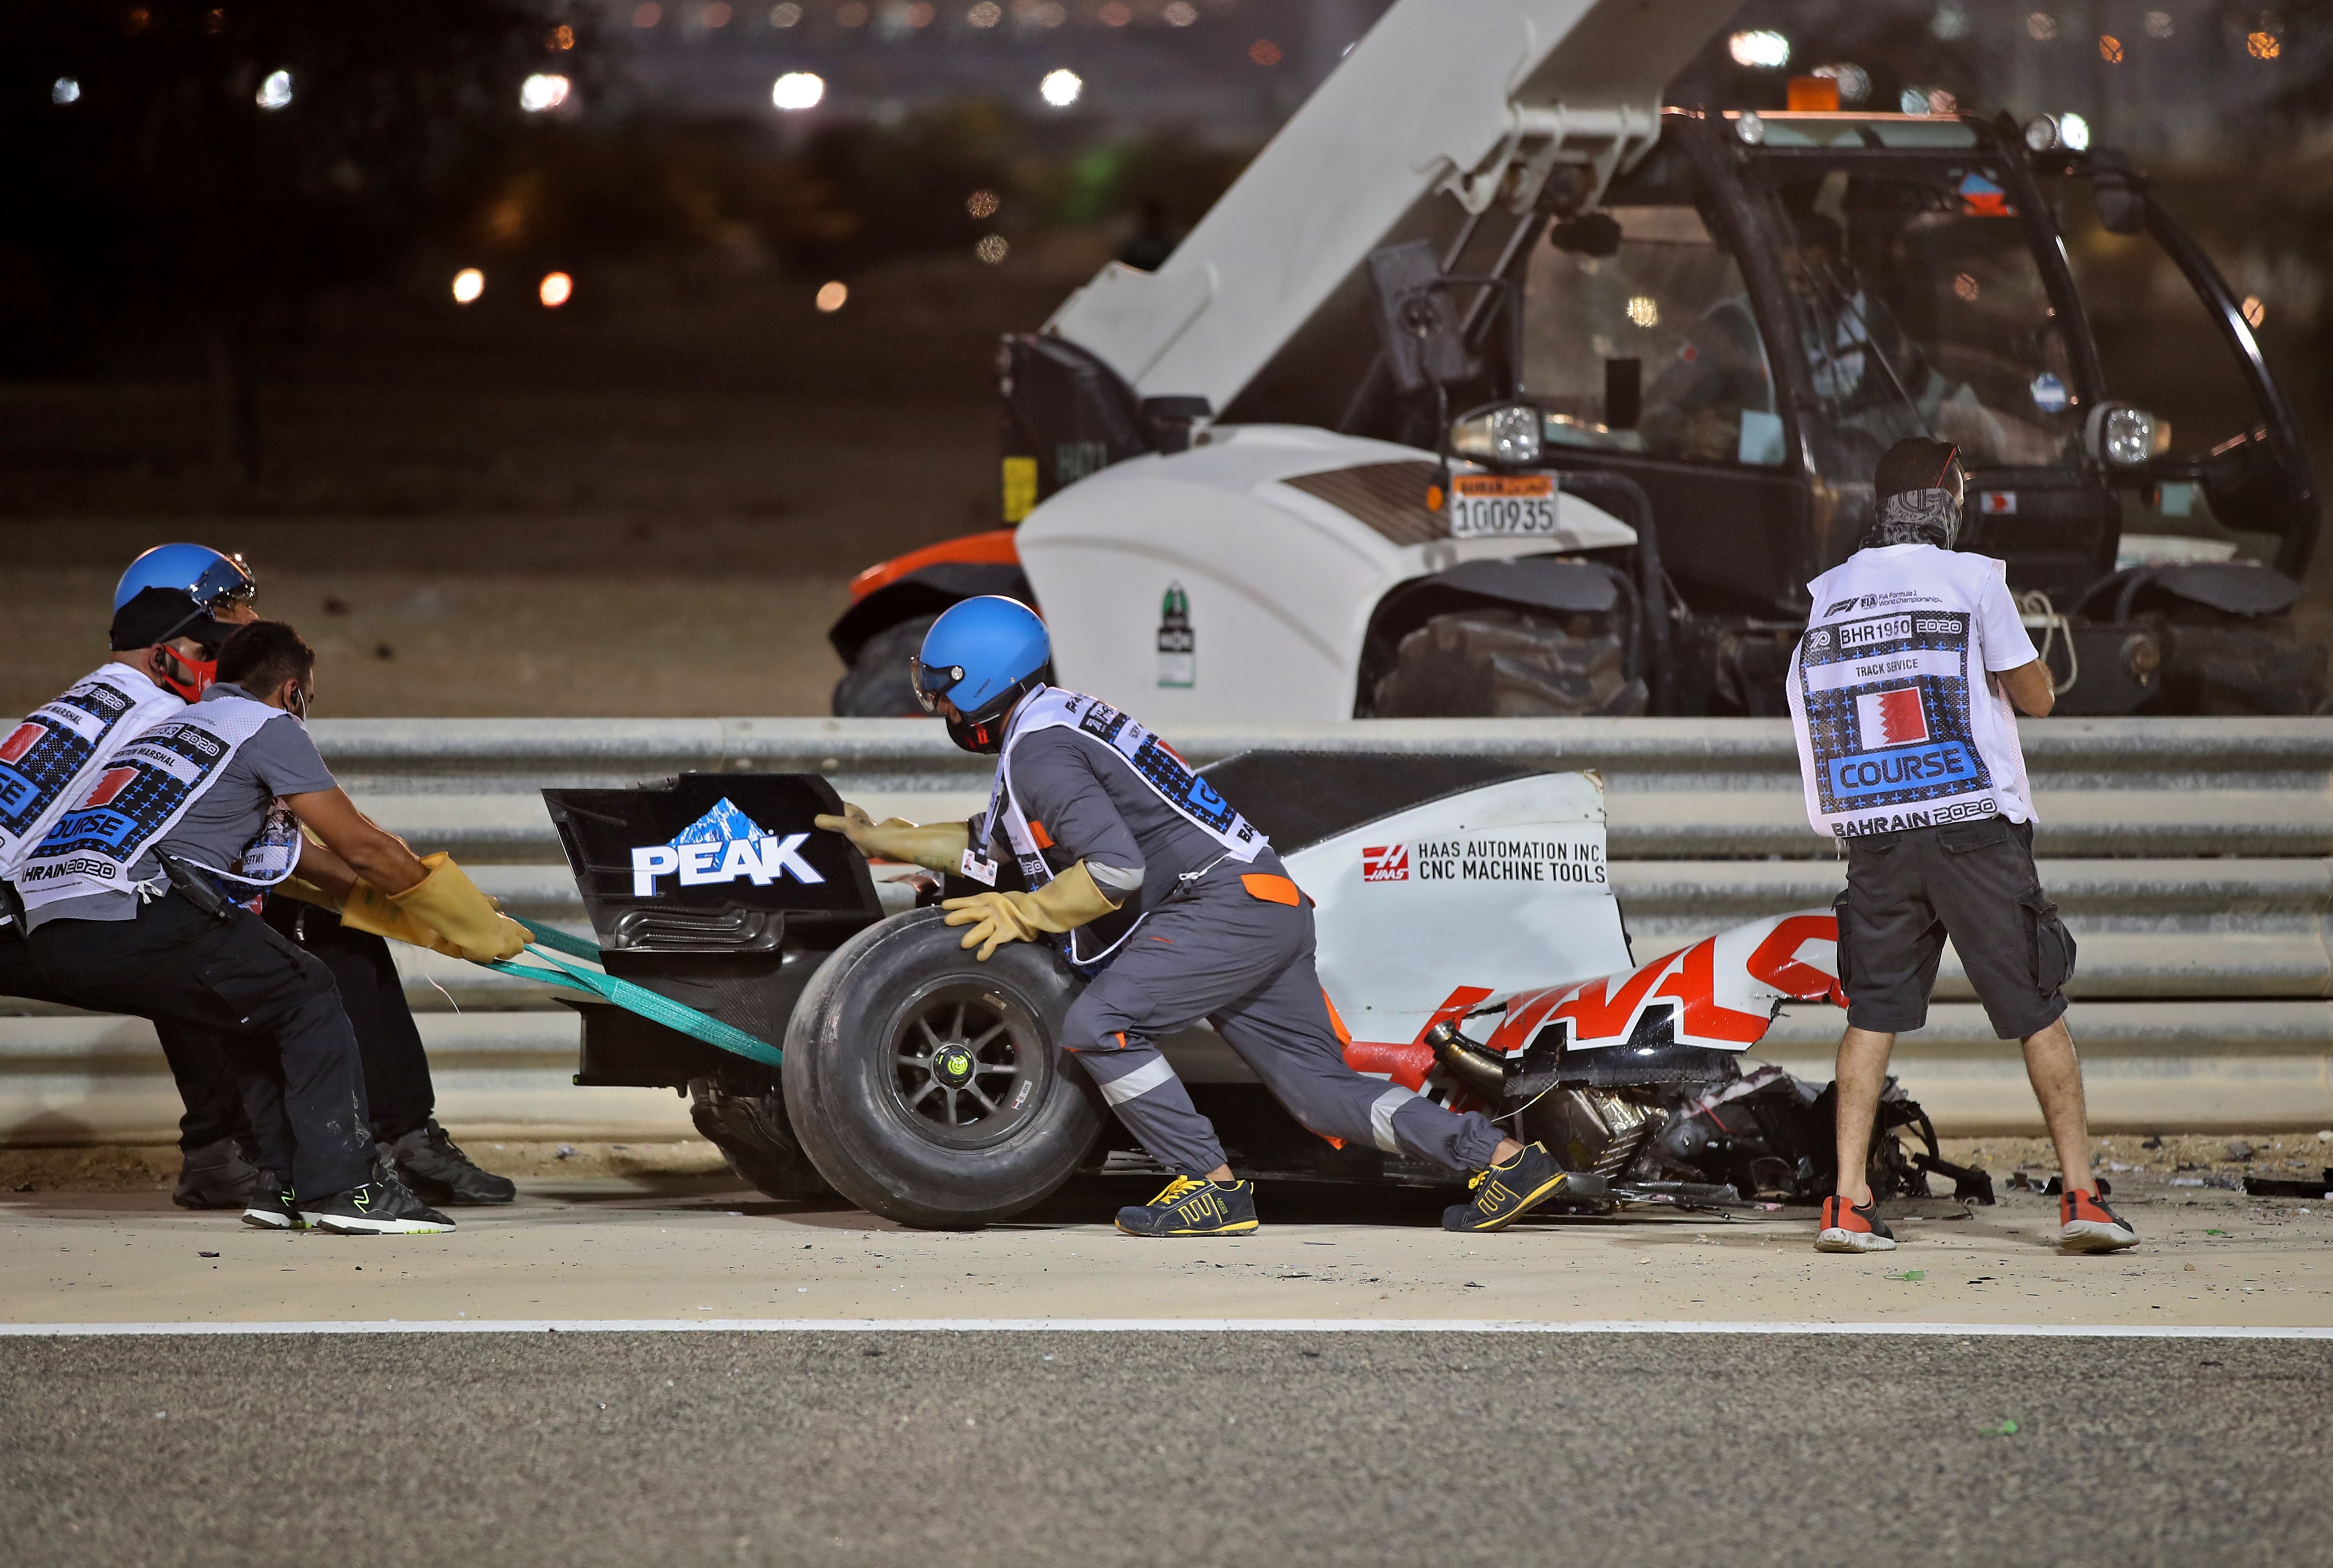 Grosjean’s car was ripped in two